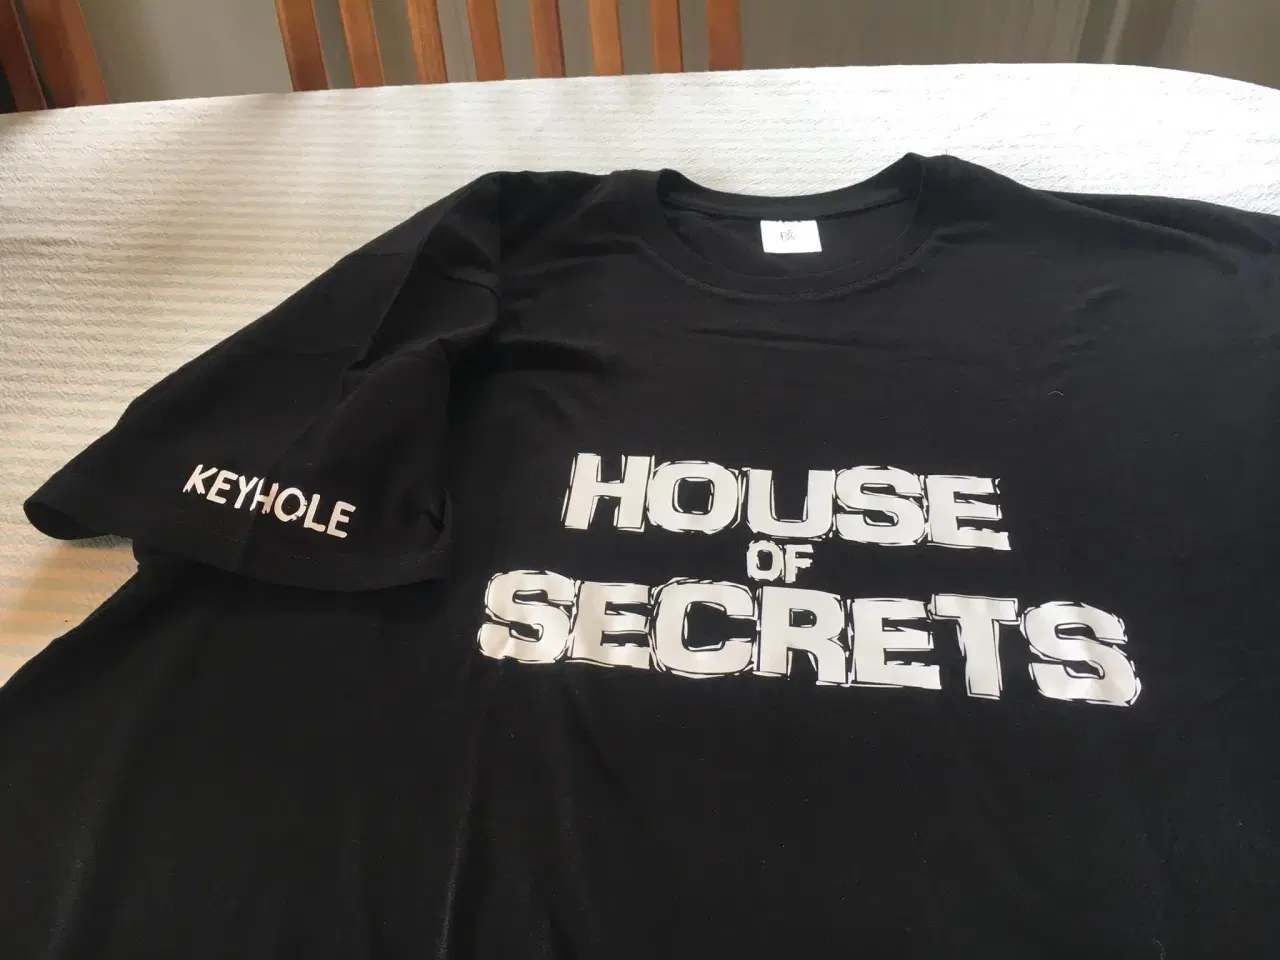 Billede 2 - T-shirts fra det danske rockband House of Secrets